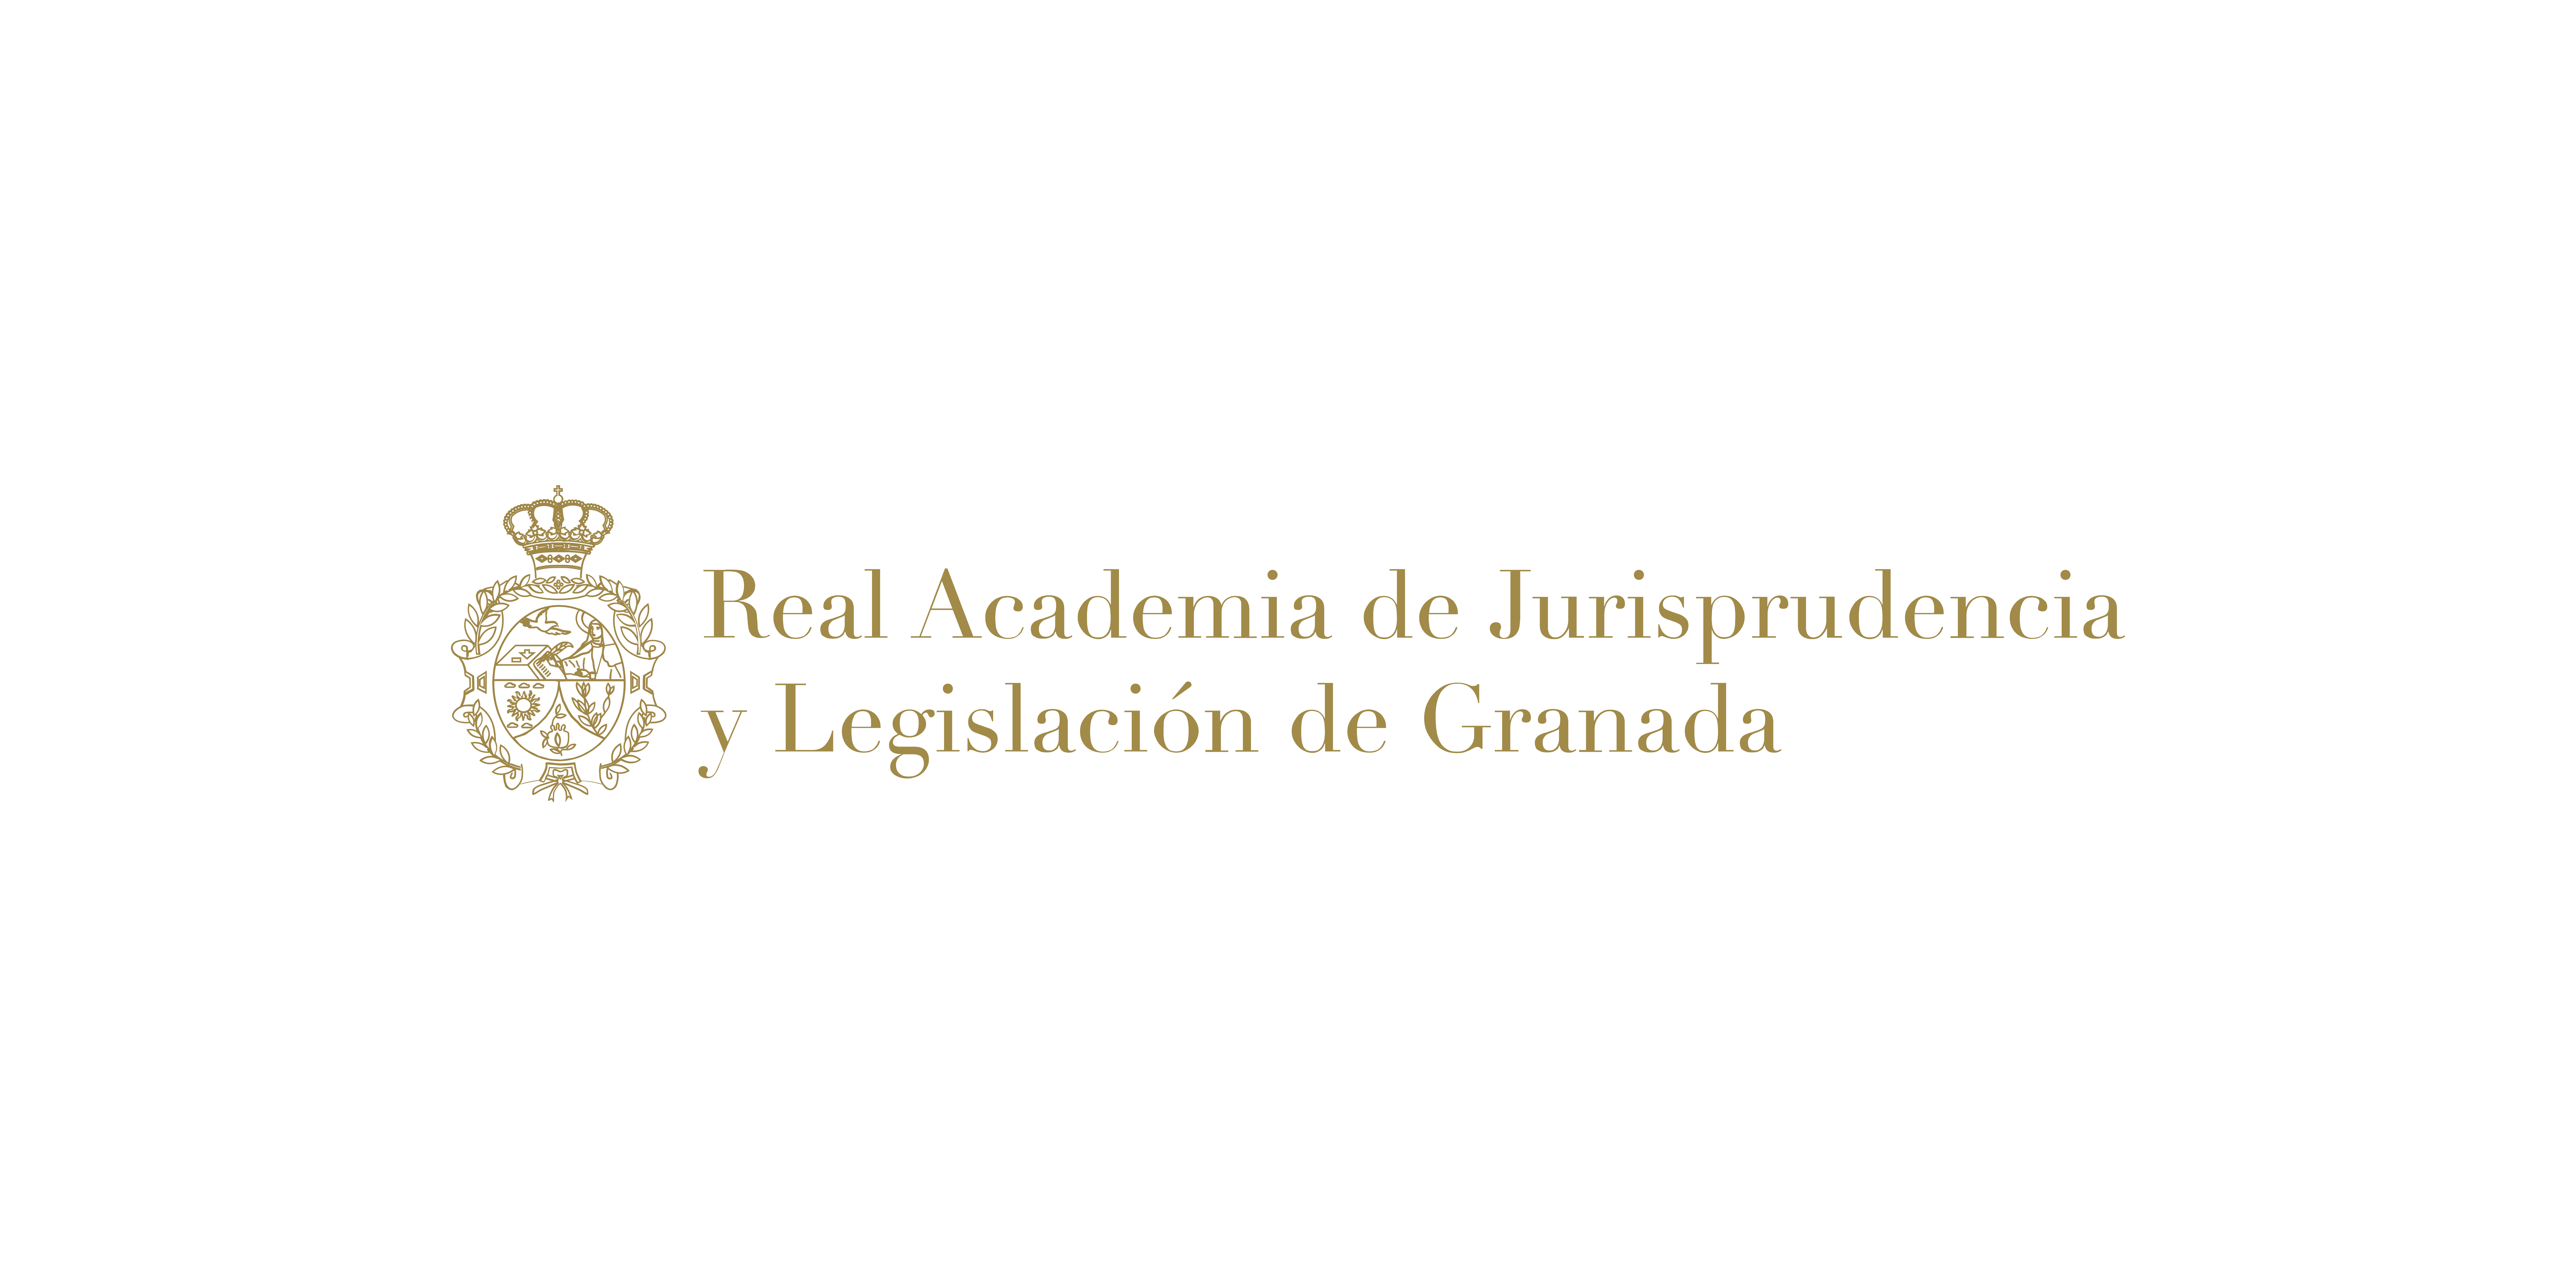 Real Academia de Jurisprudencia y Legislación de Granada